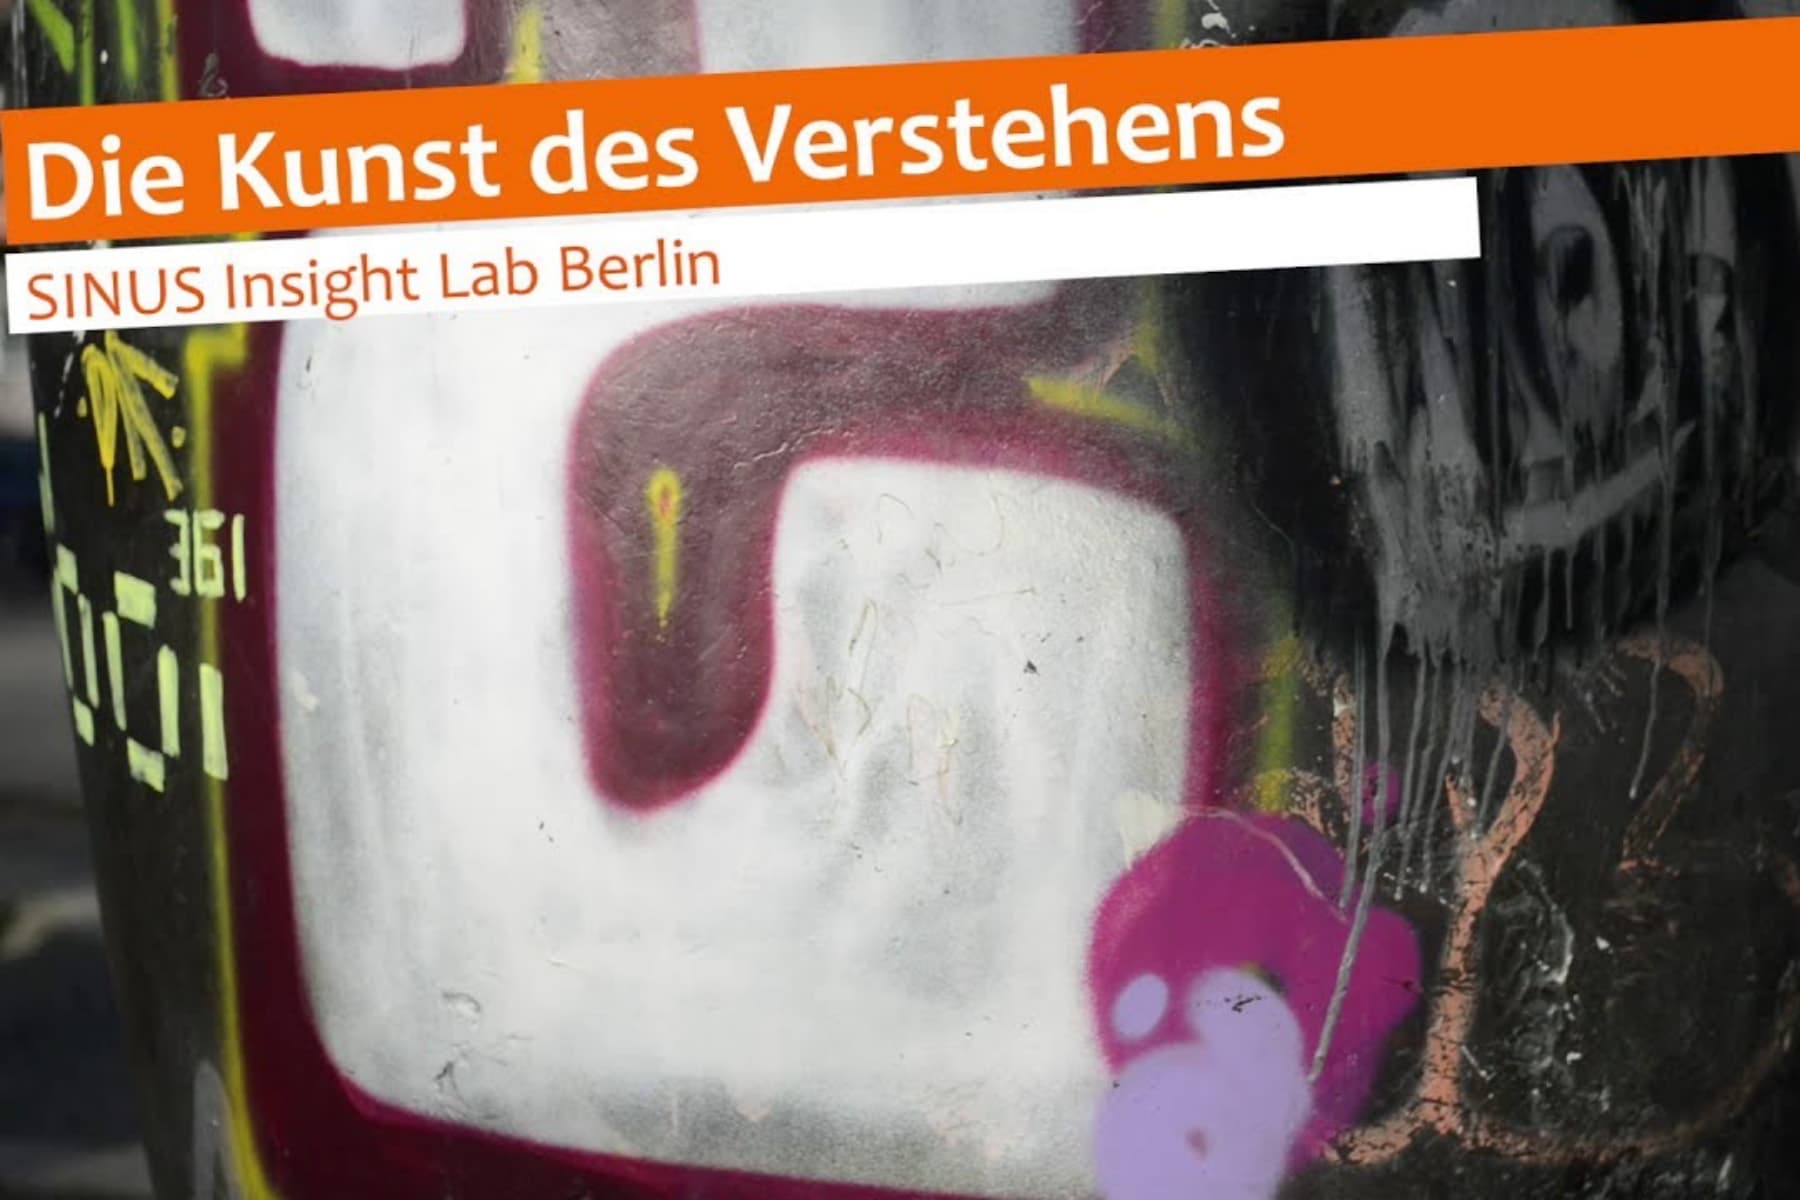 SINUS-Institut Berlin | Die Kunst des Verstehens